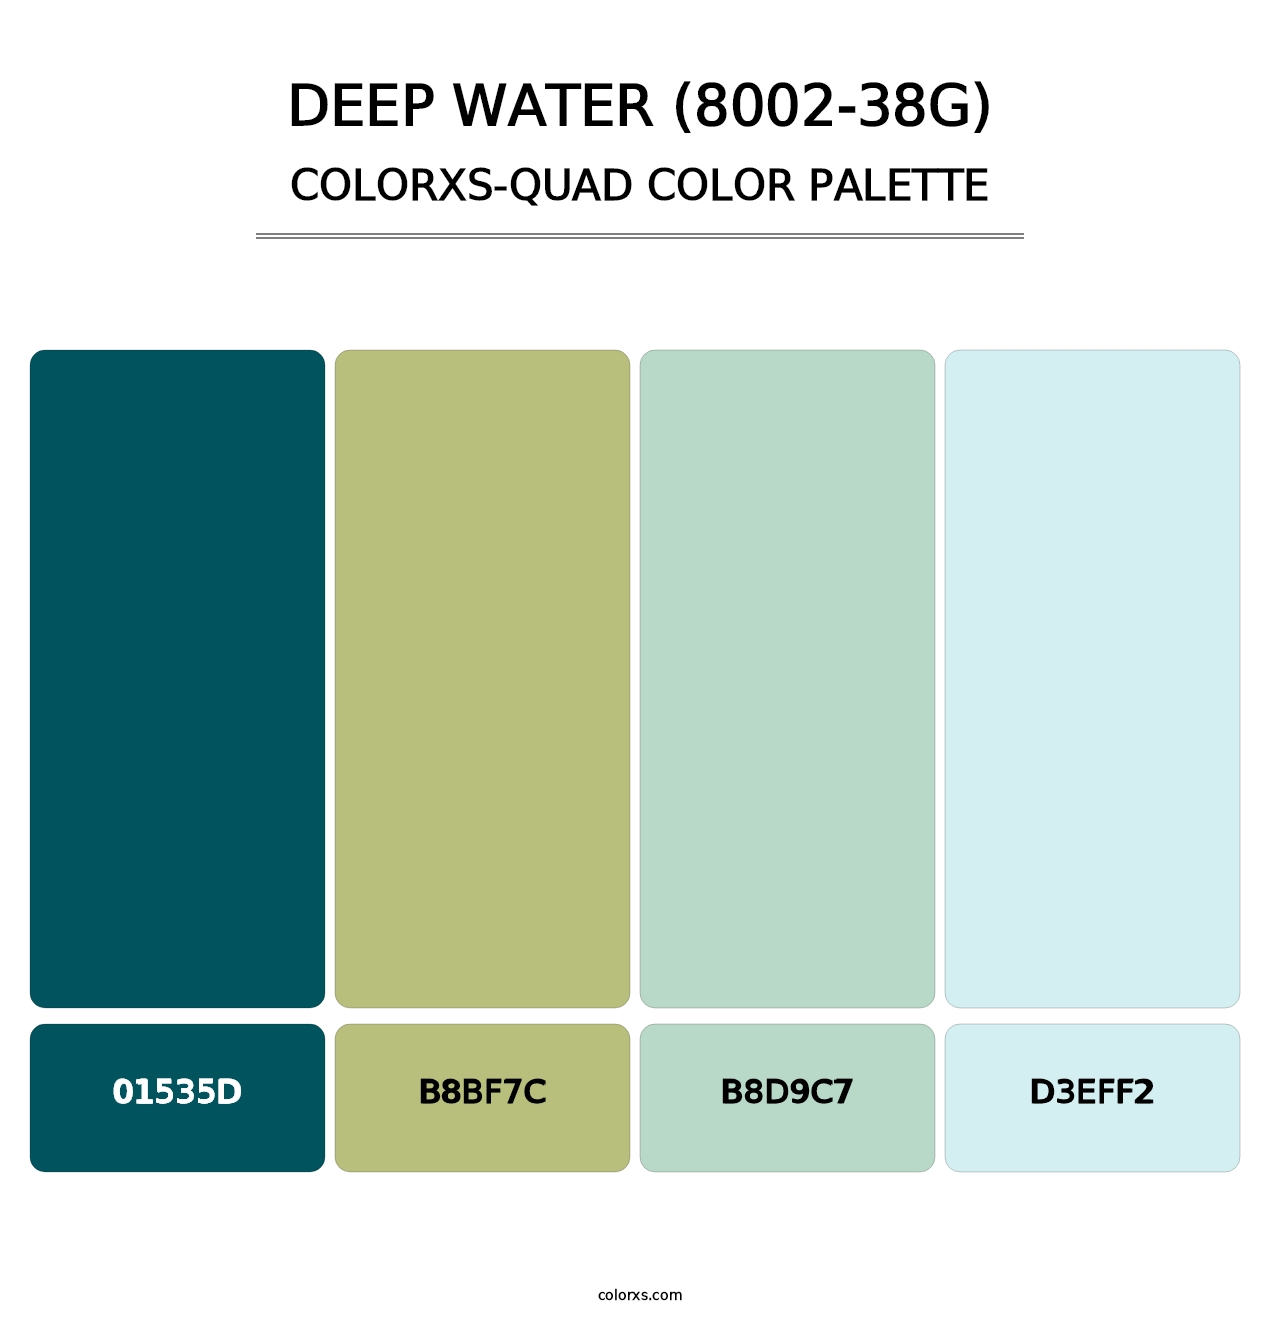 Deep Water (8002-38G) - Colorxs Quad Palette